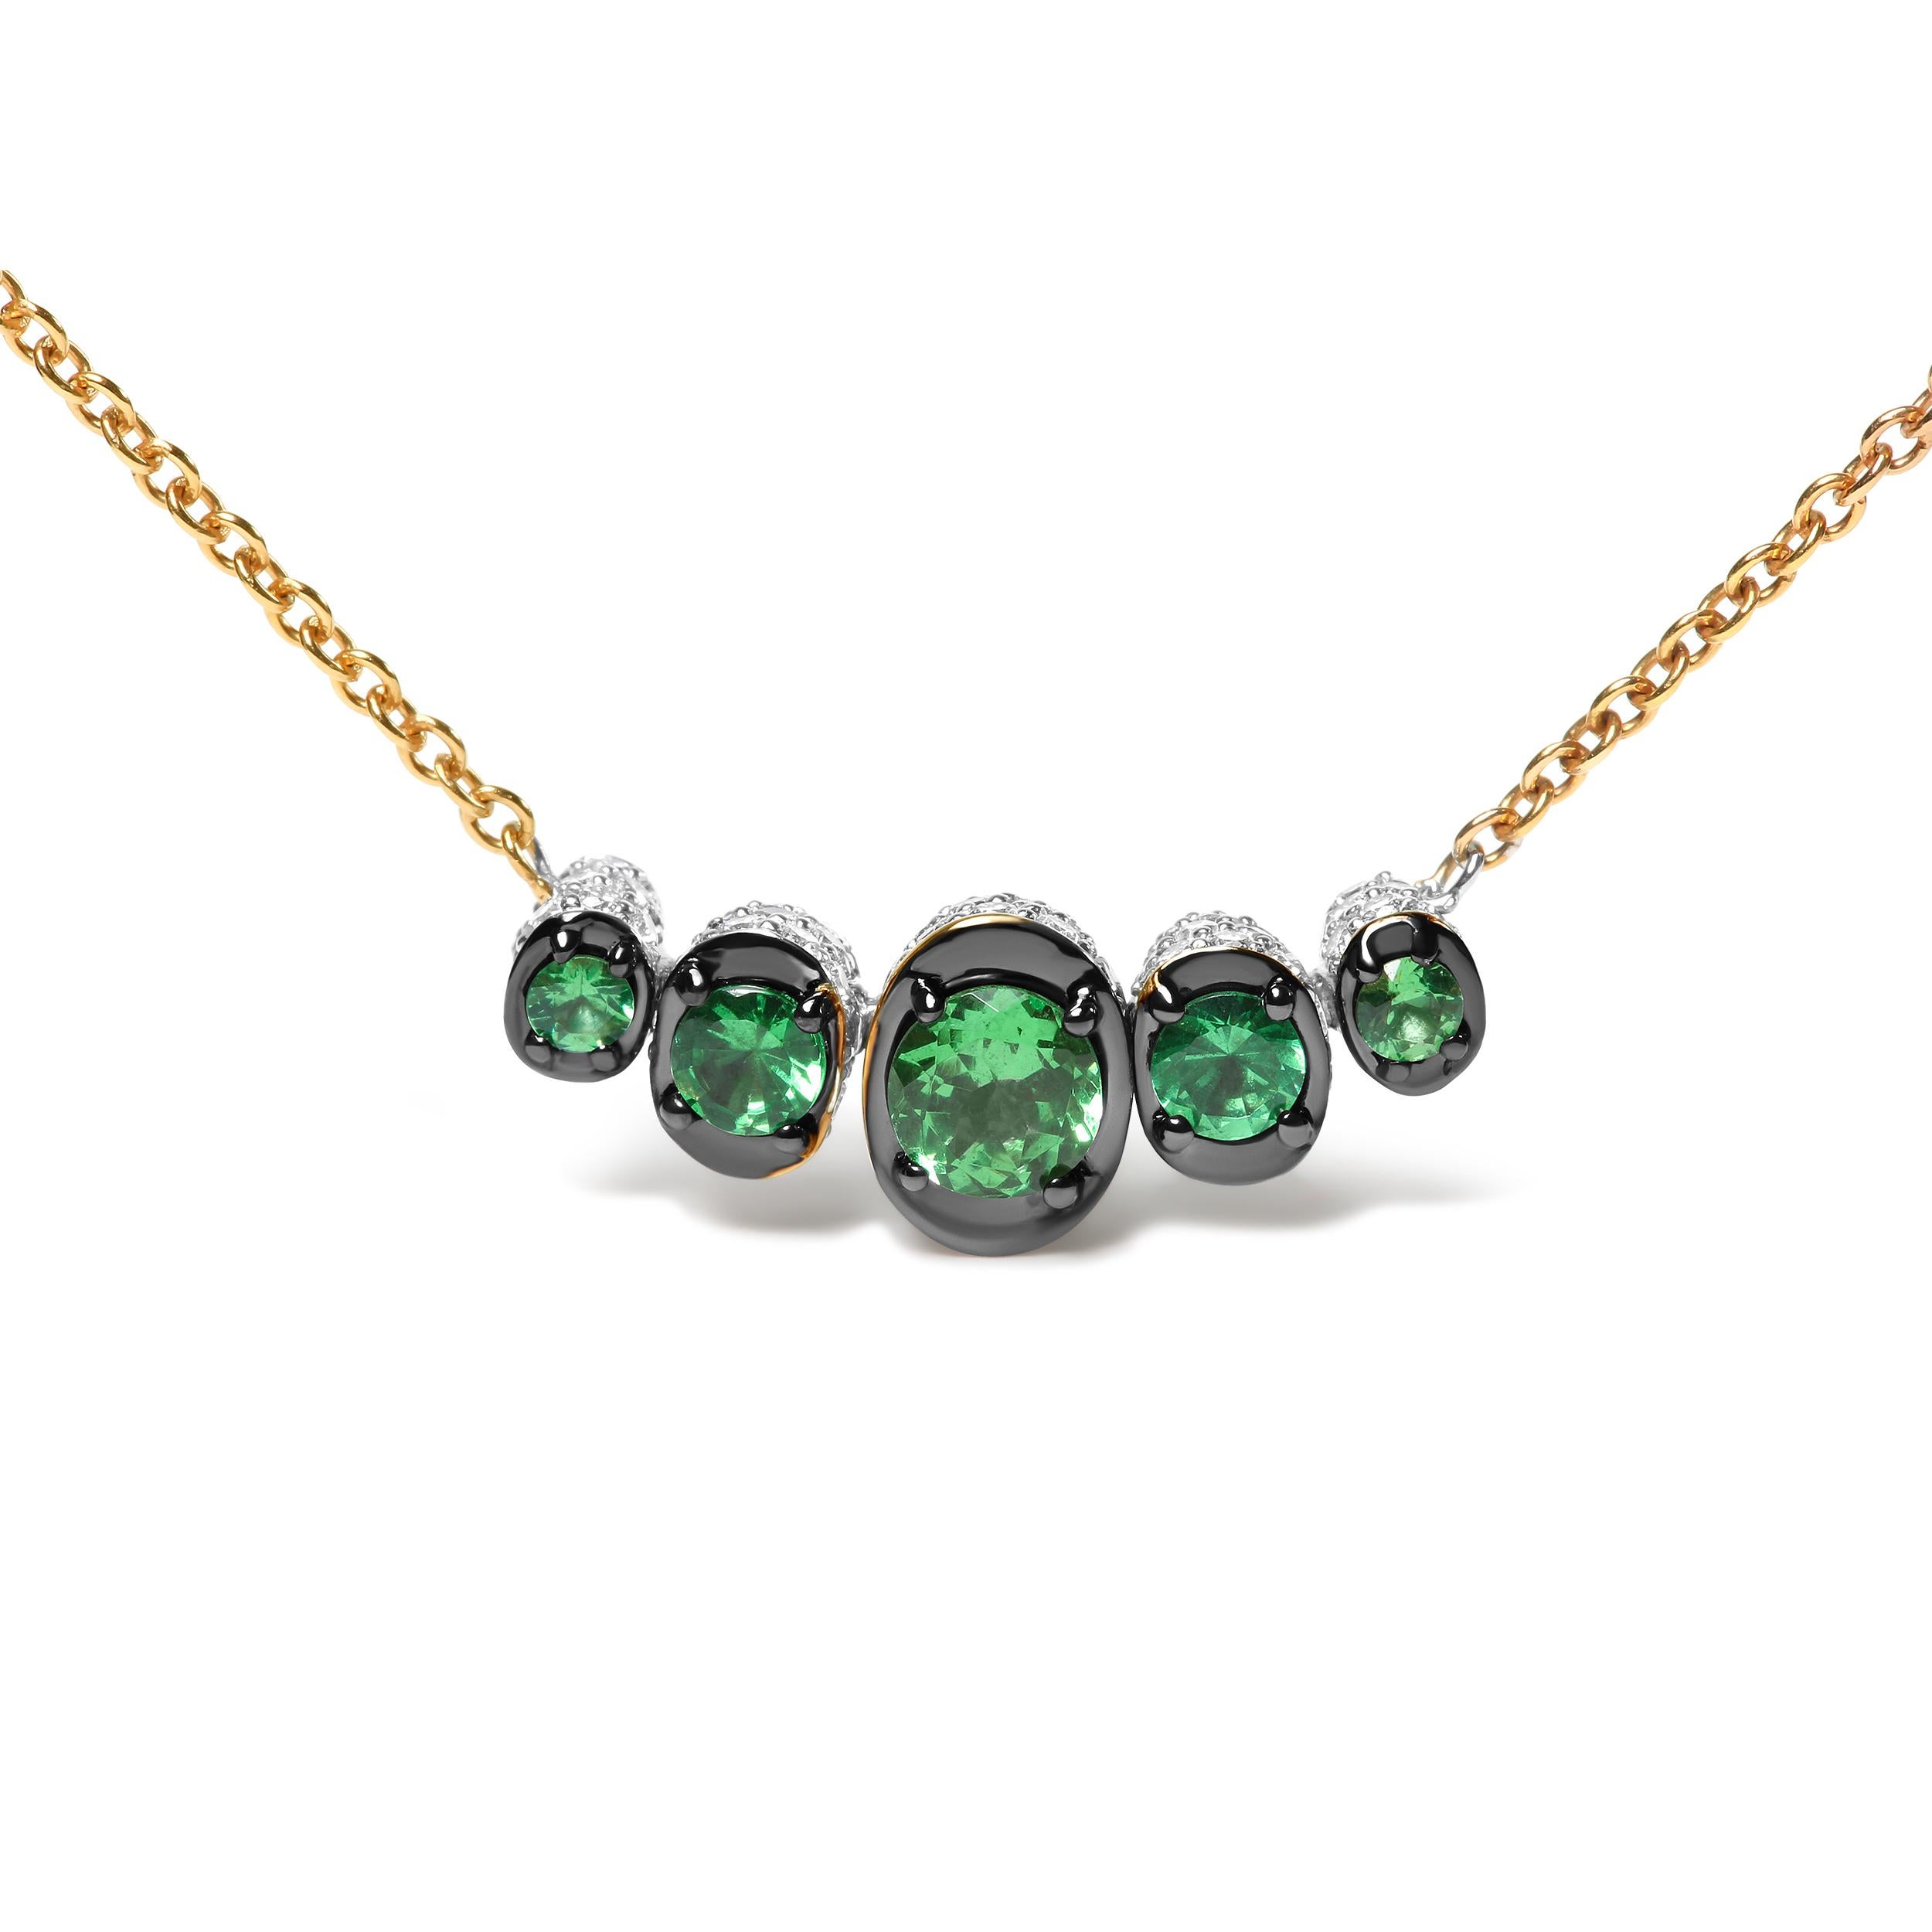 Ergänzen Sie Ihren stilvollen Geschmack mit dieser wunderschönen Halskette mit Diamanten und Edelsteinen. Diese modische Halskette graduiert runde wärmebehandelte grüne Tsavorit-Edelsteine in den Größen 4 mm, 3 mm und 2 mm auf einem gebogenen Stab